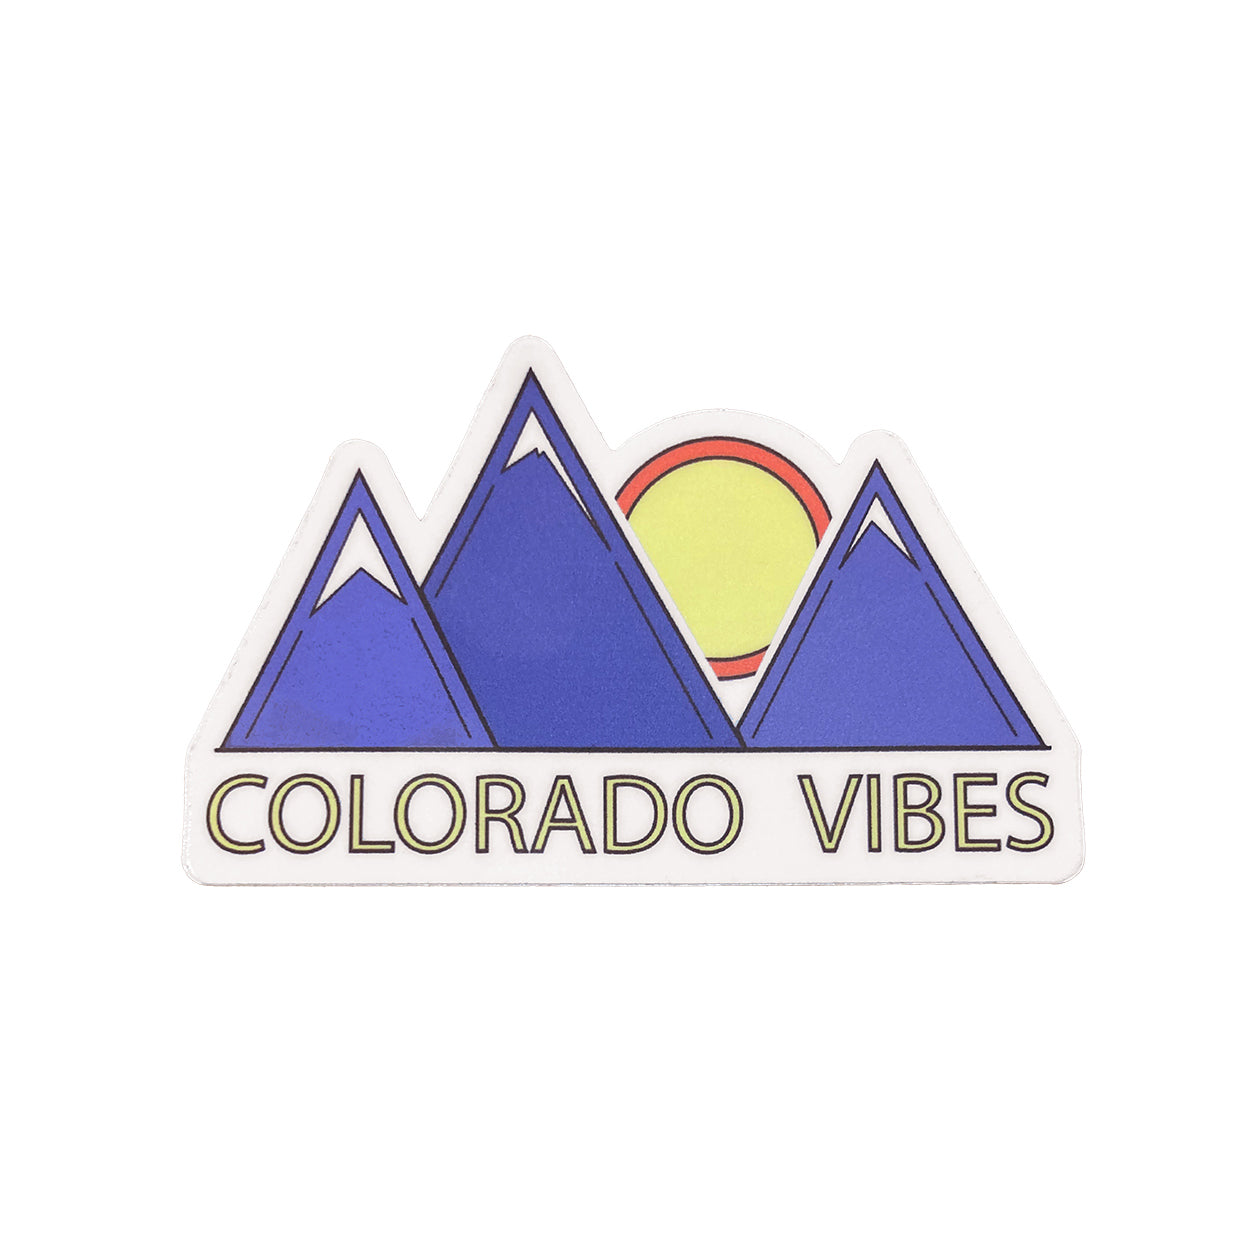 Colorado Vibes Sticker